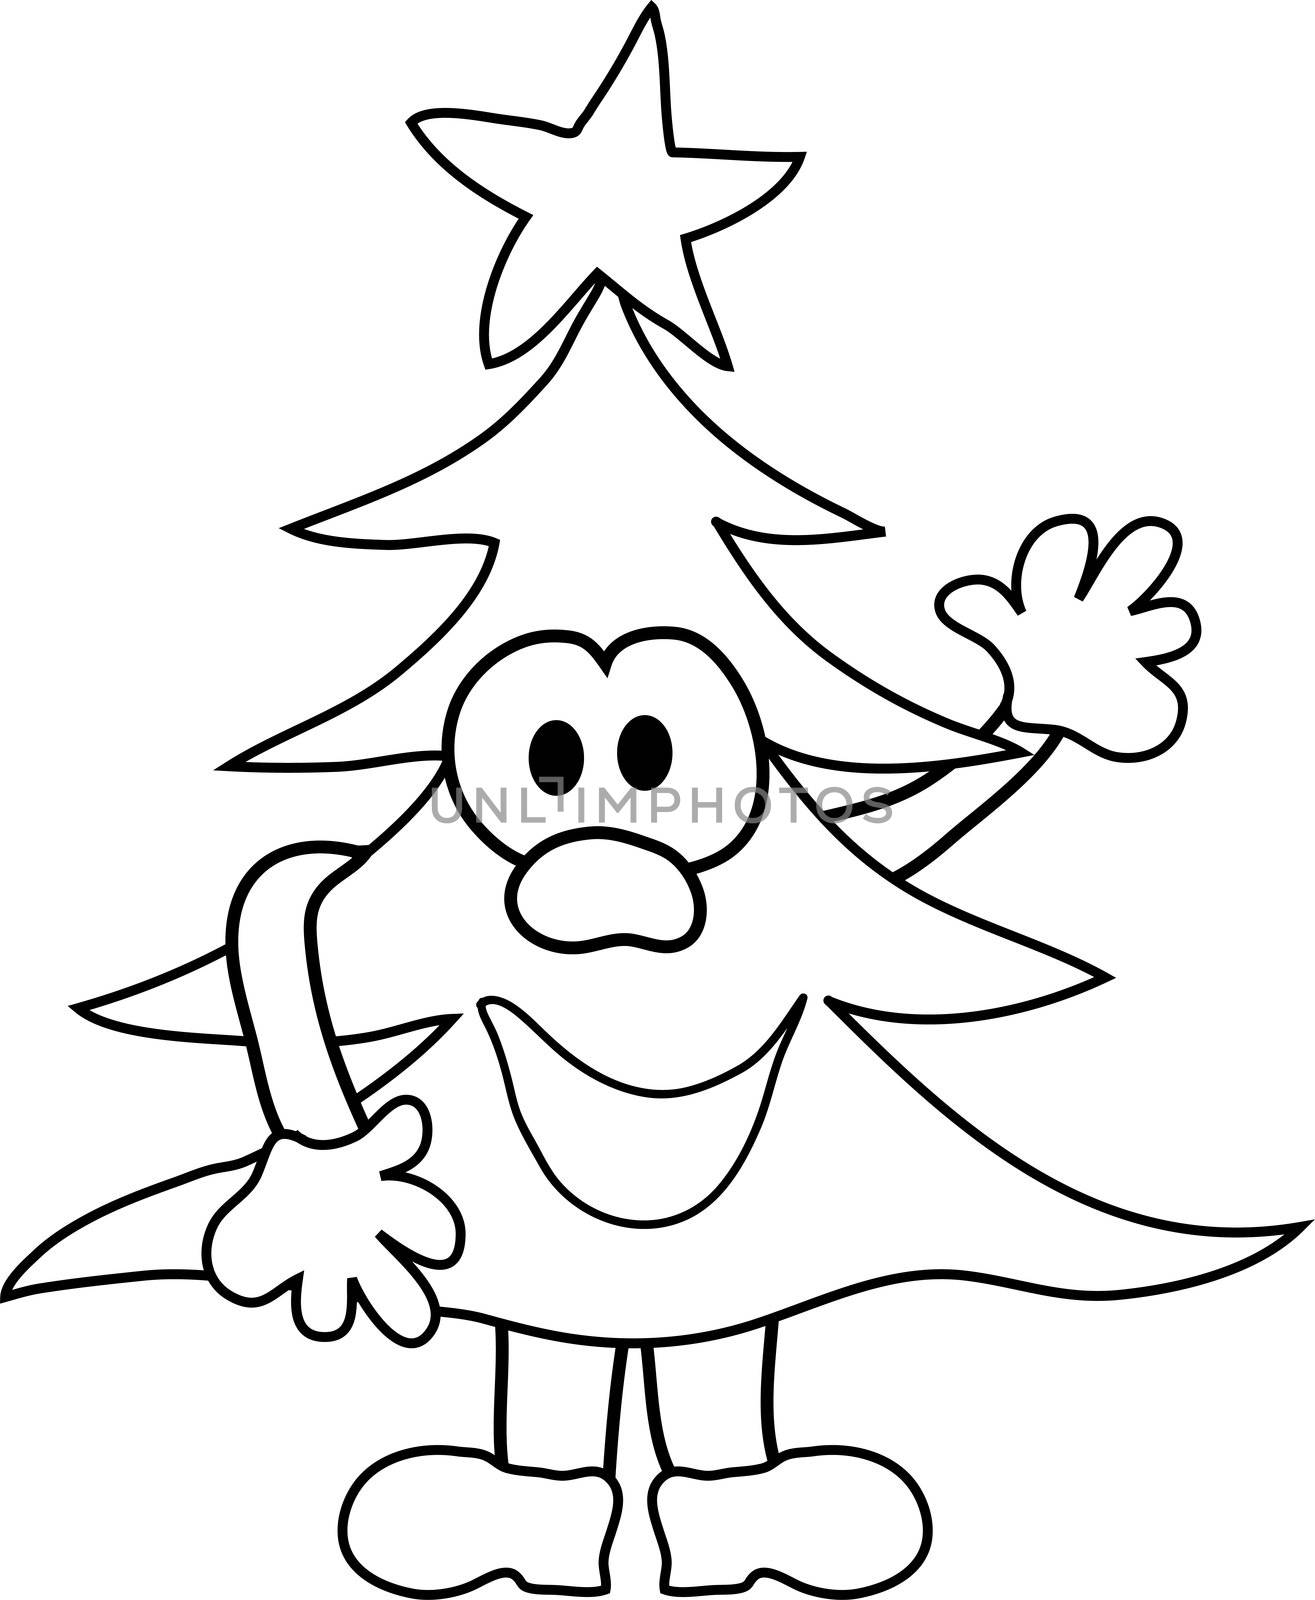 Cartoon christmas tree by peromarketing